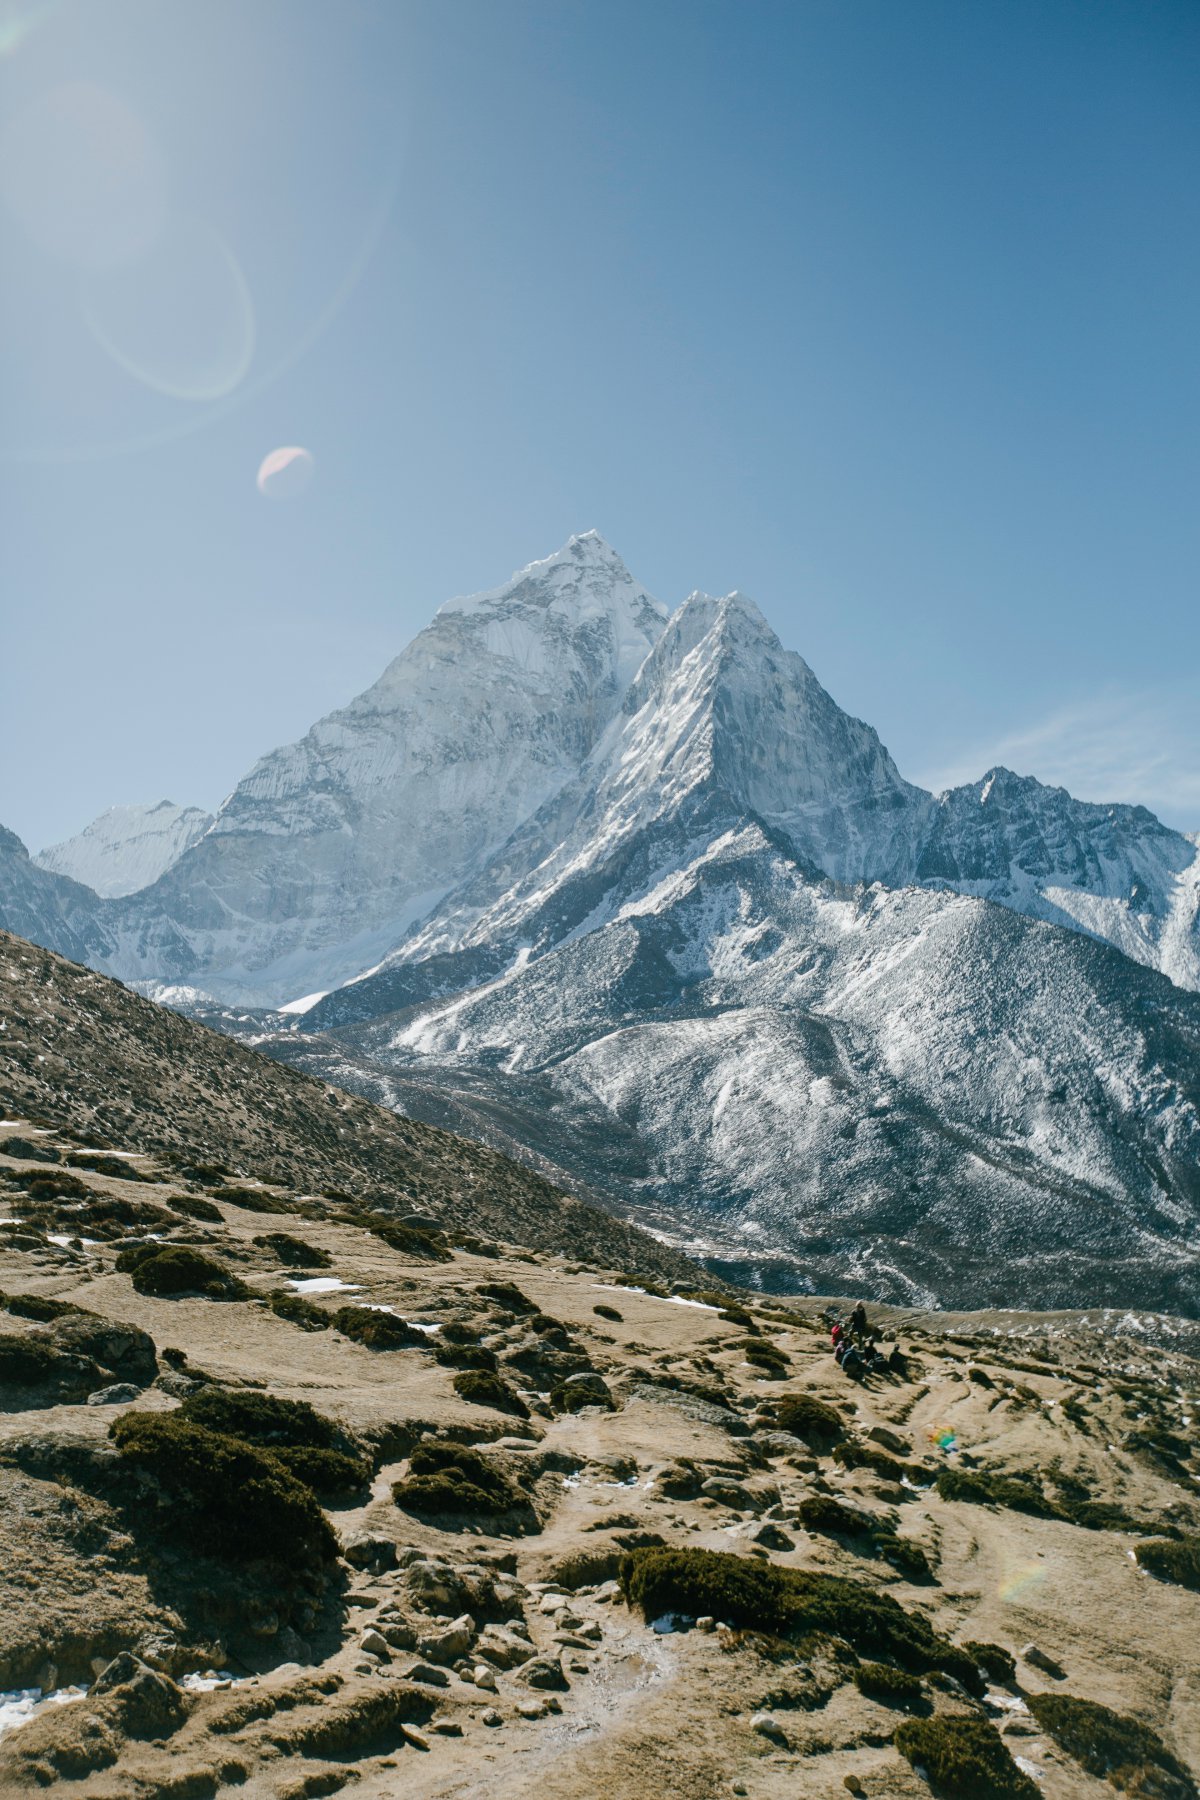 简介:一组精美的尼泊尔喜马拉雅山雪山图片,尼泊尔,喜马拉雅山,雪山